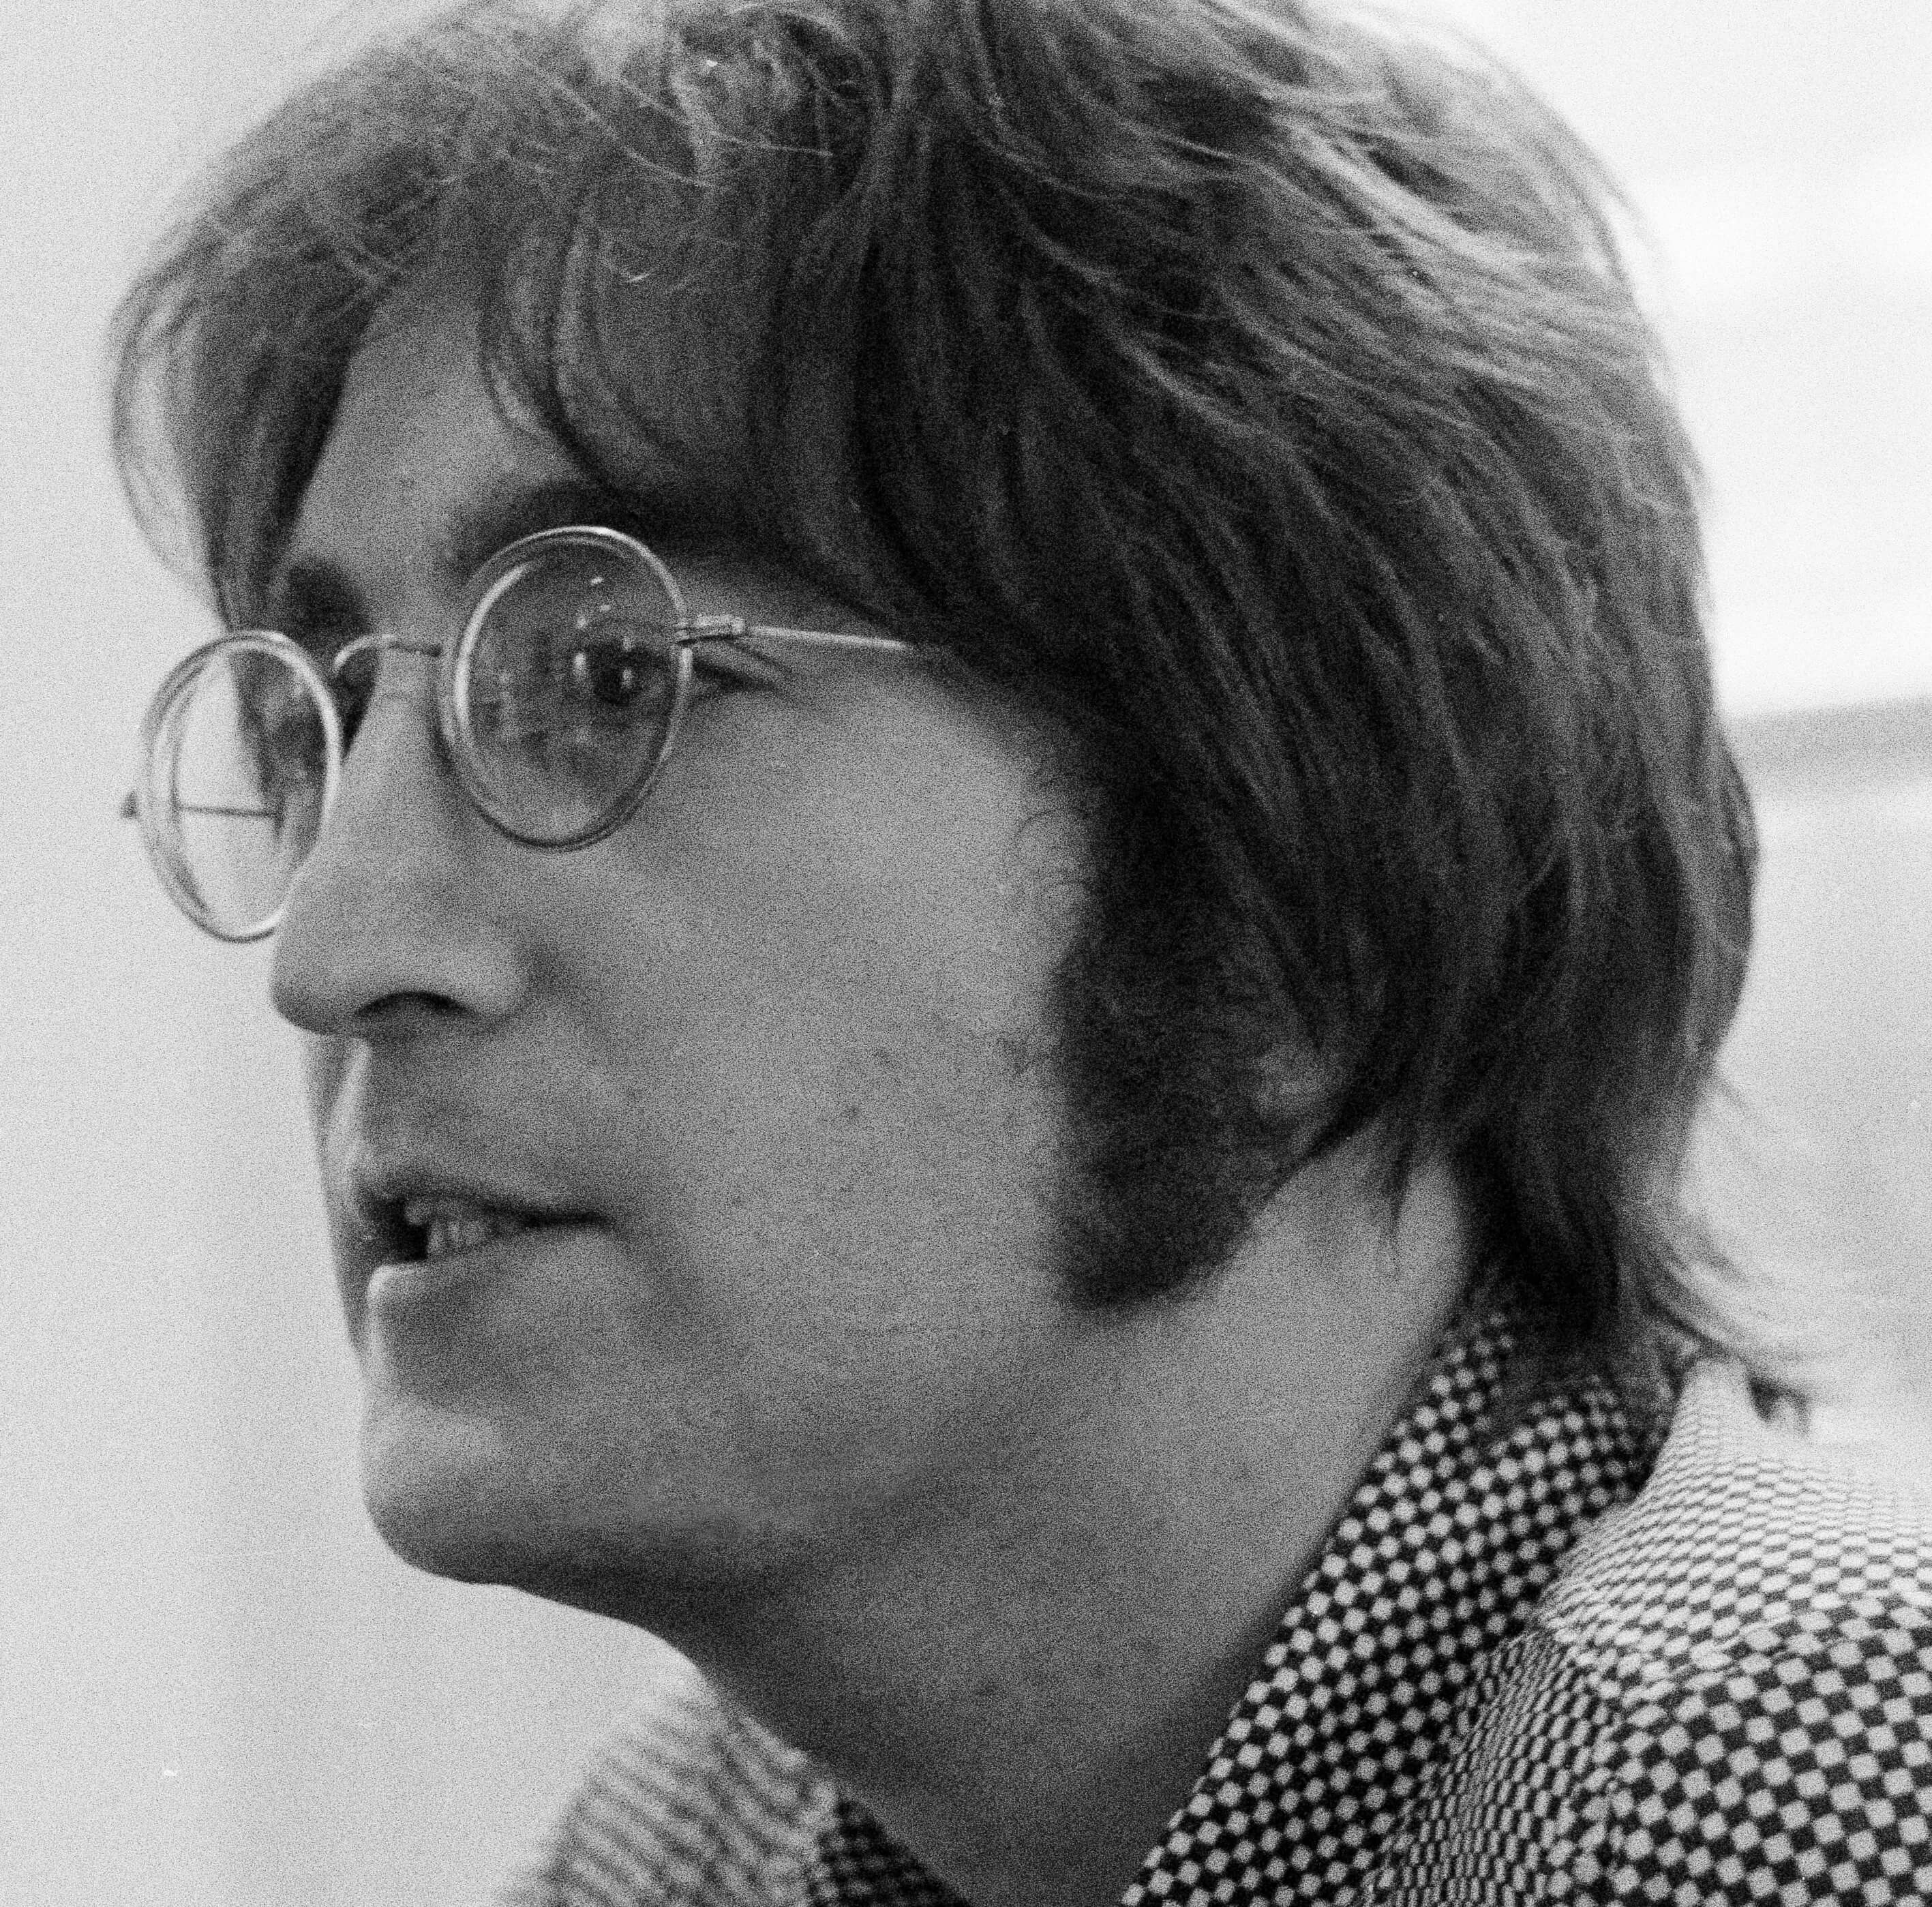 John Lennon in black-and-white during The Beatles' "Revolution" era